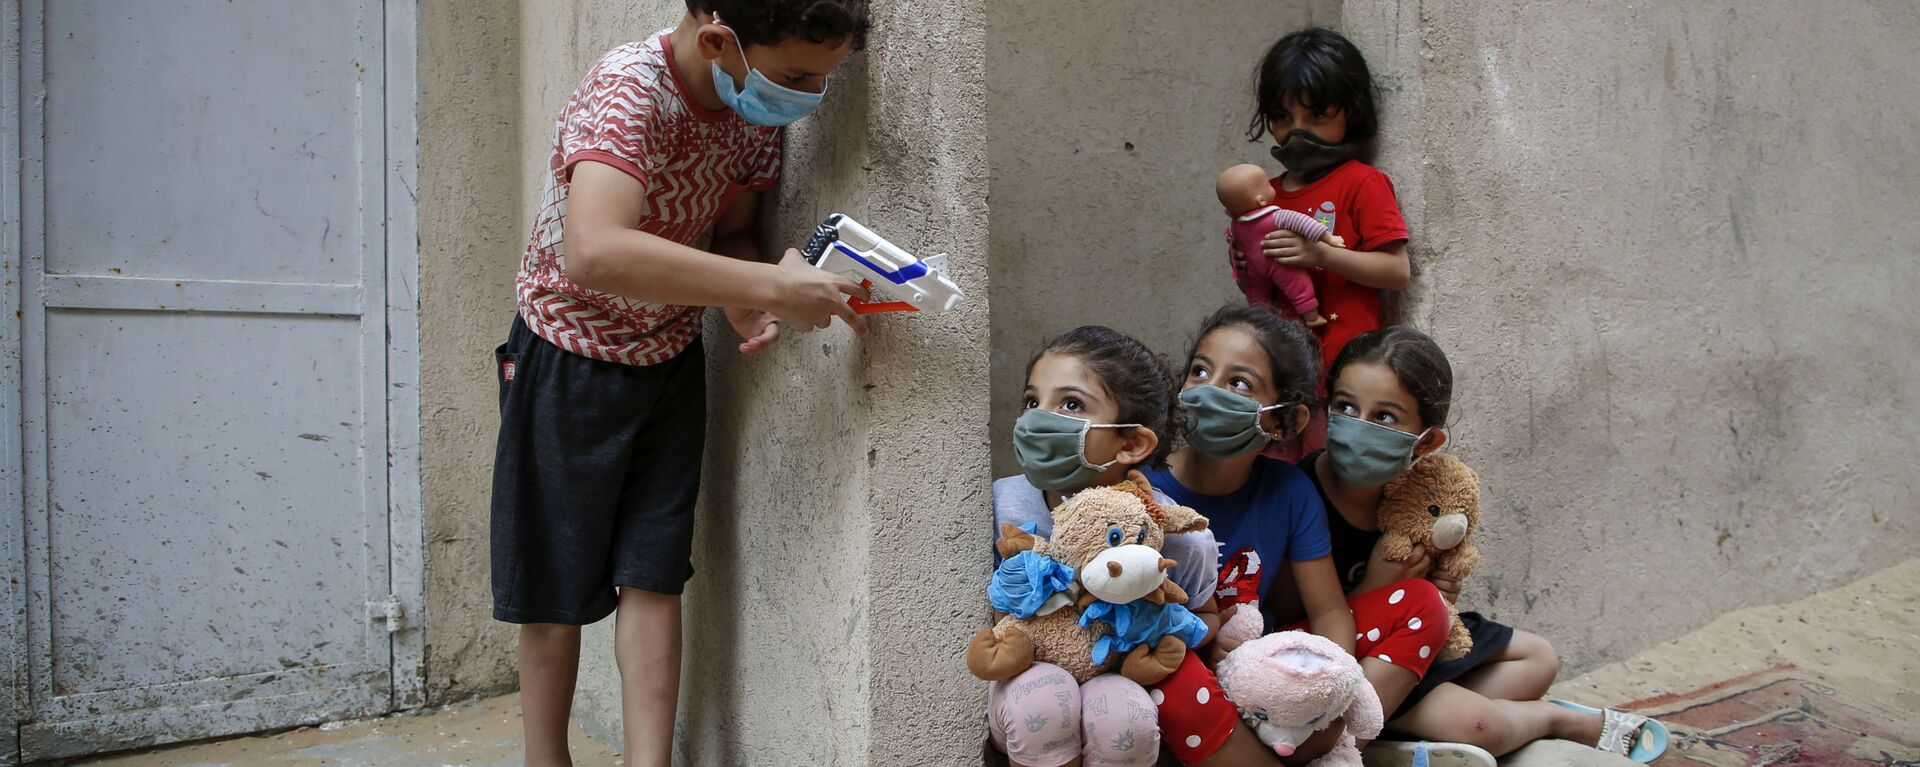 أطفال فلسطينيون يرتدون كمامات بسبب وباء فيروس كورونا كوفيد-19، يلعبون خارج منزلهم في مدينة غزة، 8 سبتمبر  2020. - سبوتنيك عربي, 1920, 12.12.2020